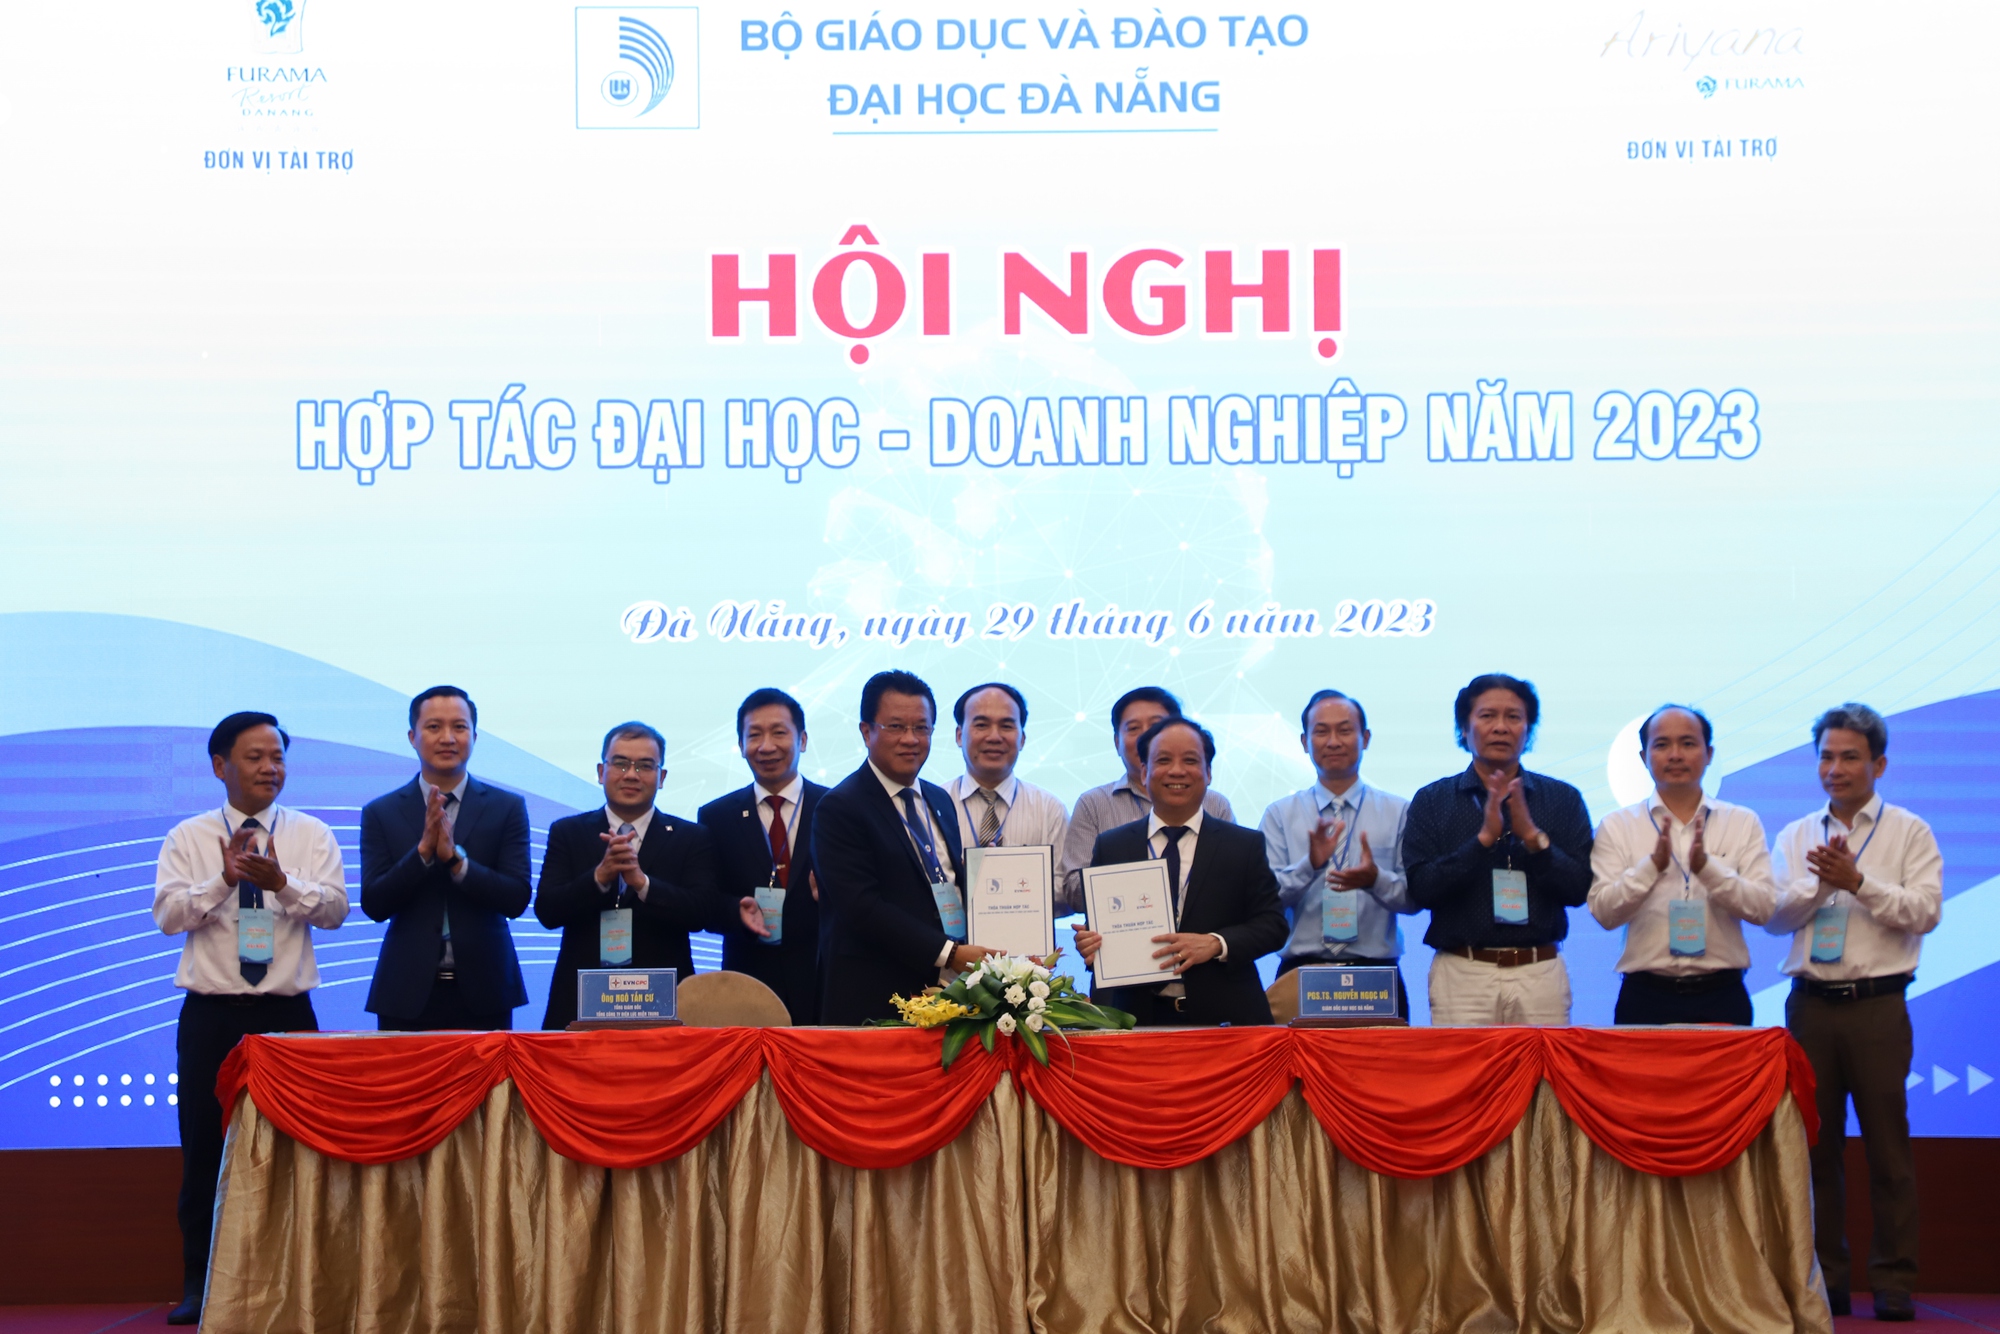 Đại học Đà Nẵng hợp tác với doanh nghiệp đào tạo nhân lực chất lượng cao - Ảnh 3.